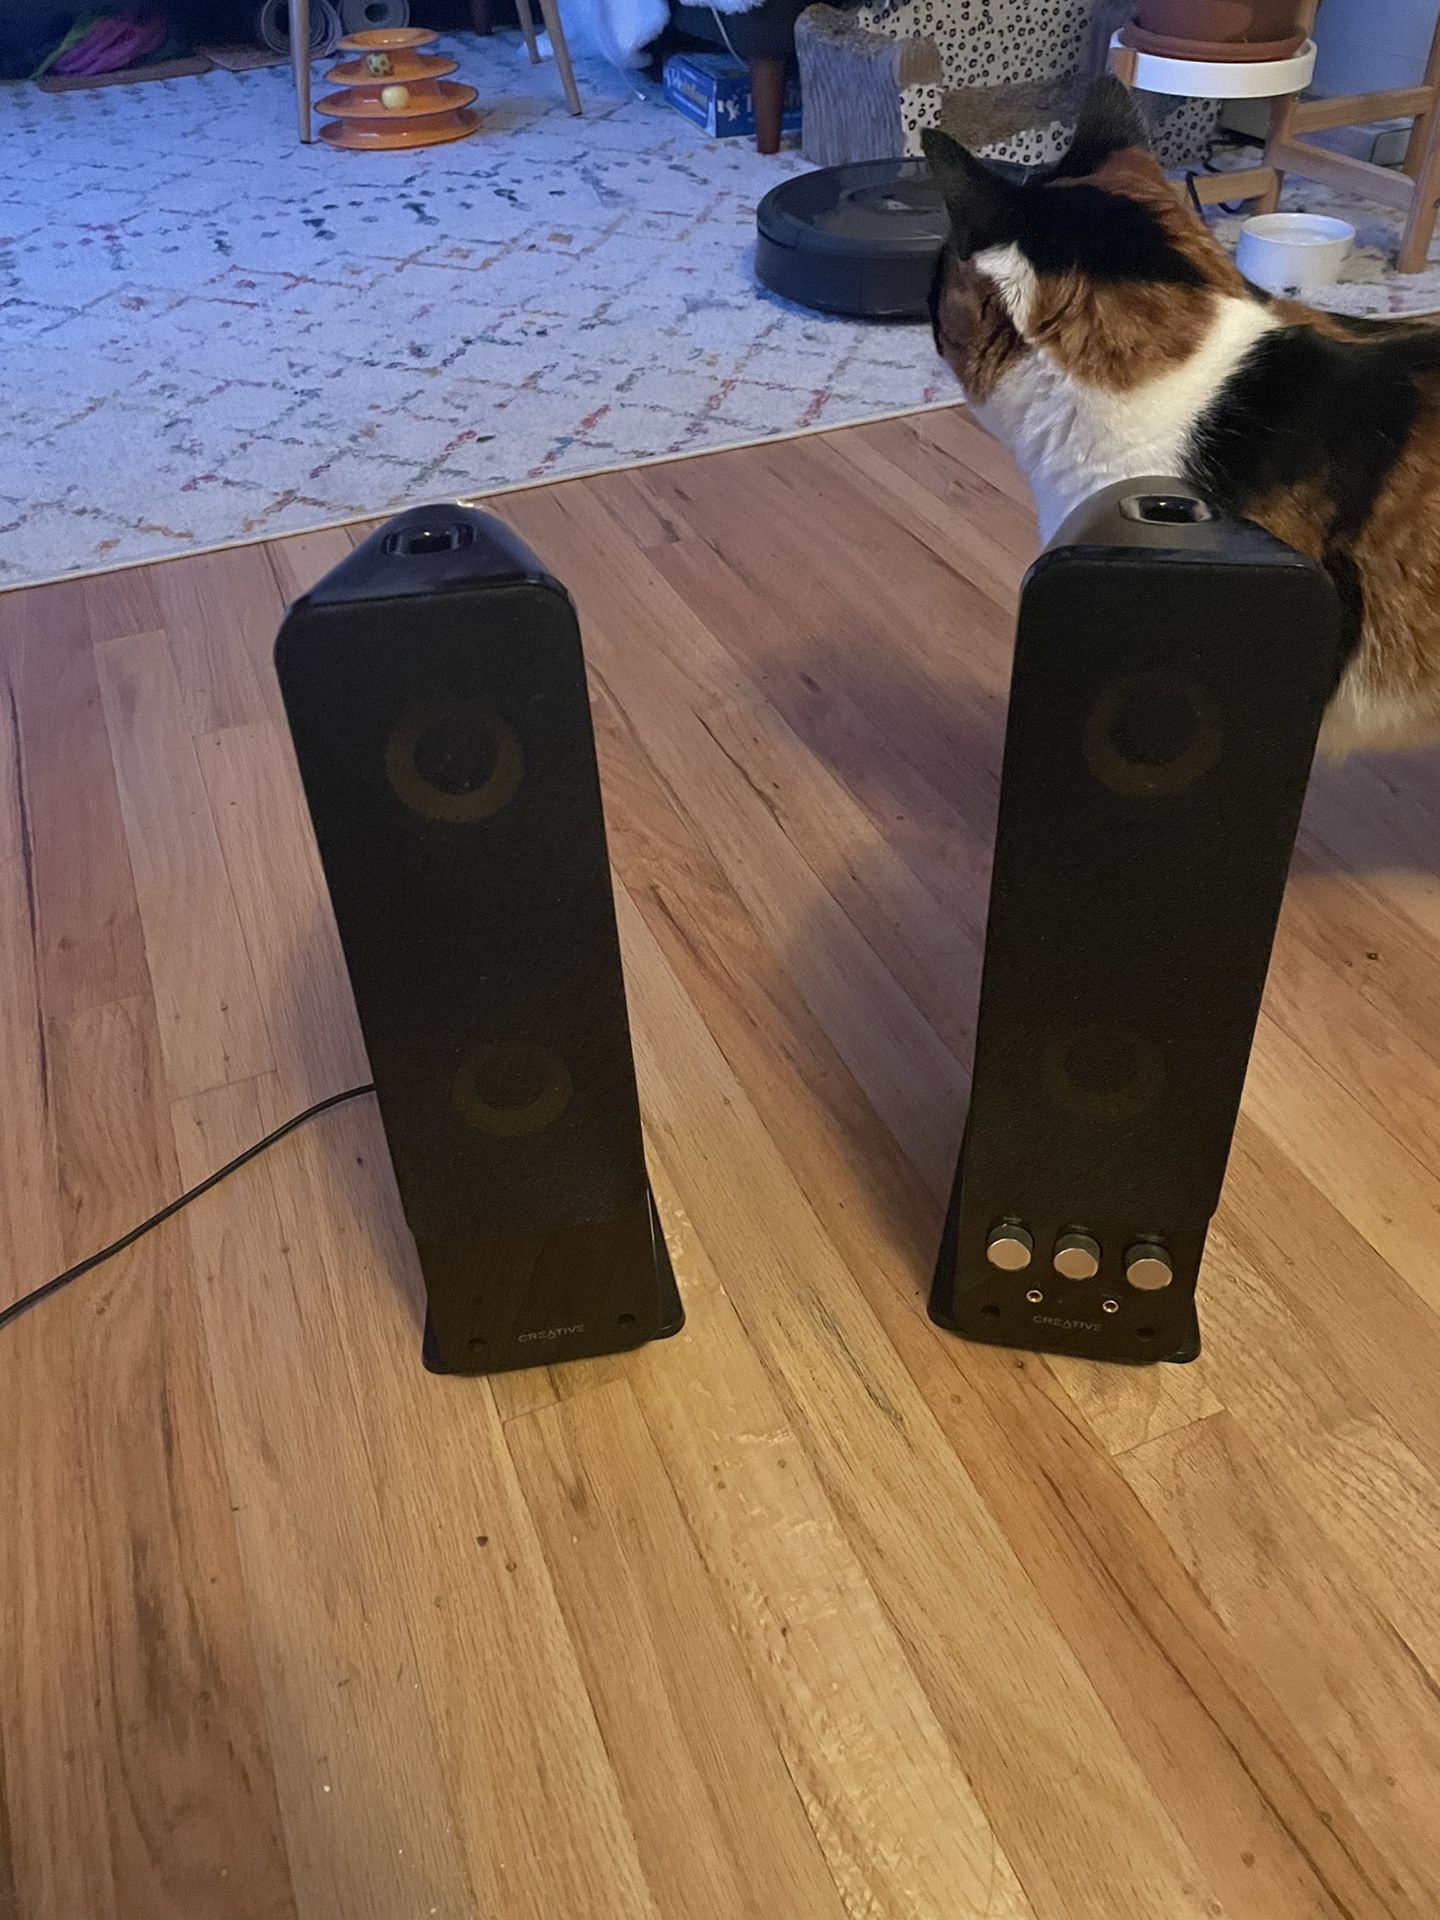 Surround Sound Speakers